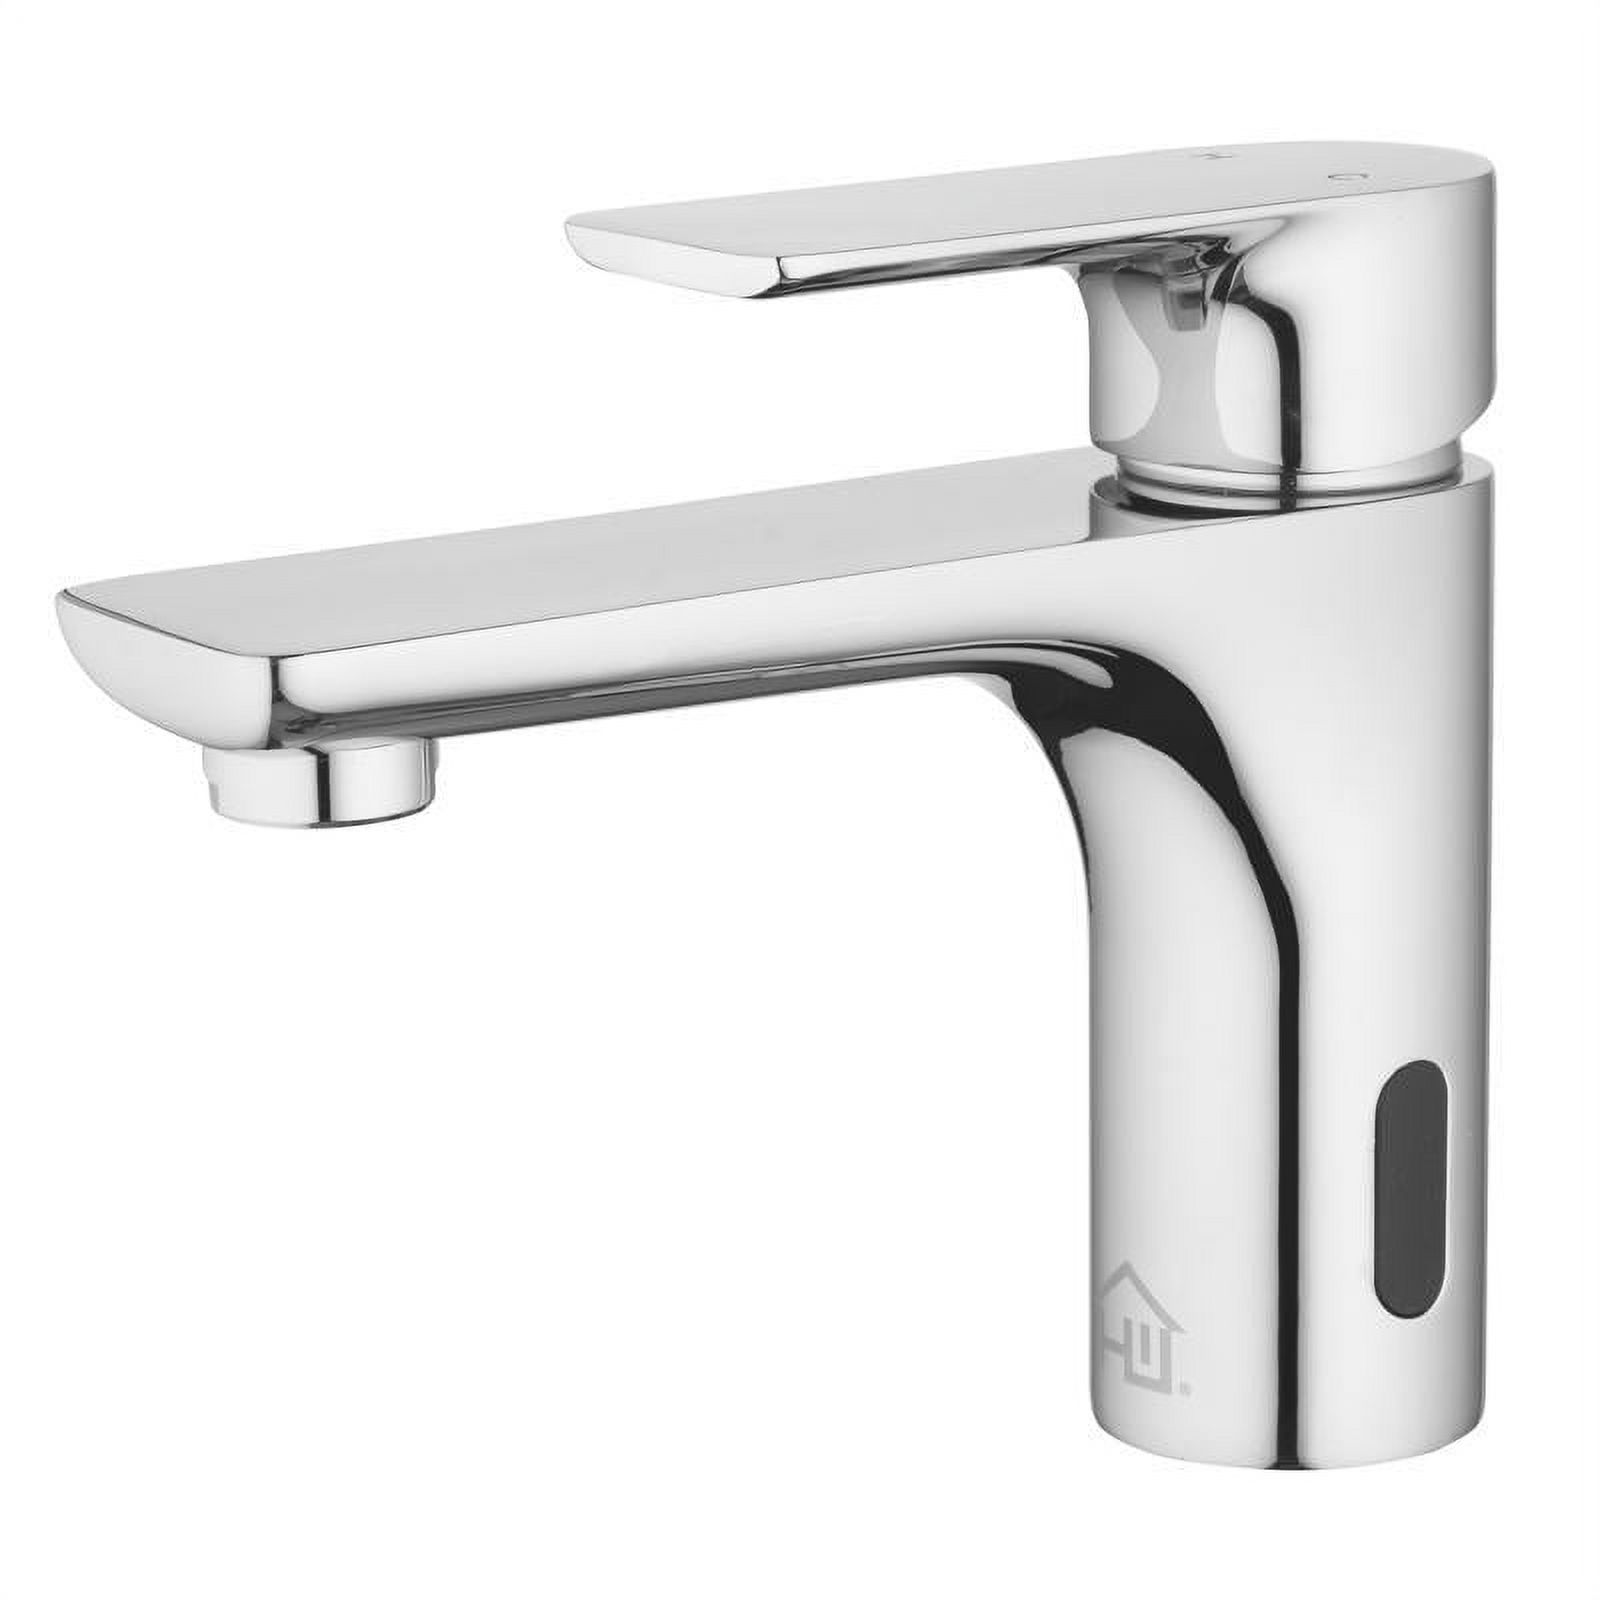 Homewerks Worldwide 4000626 2 in. Motion Sensing Single-Handle Bathroom Sink Faucet, Chrome - image 1 of 10